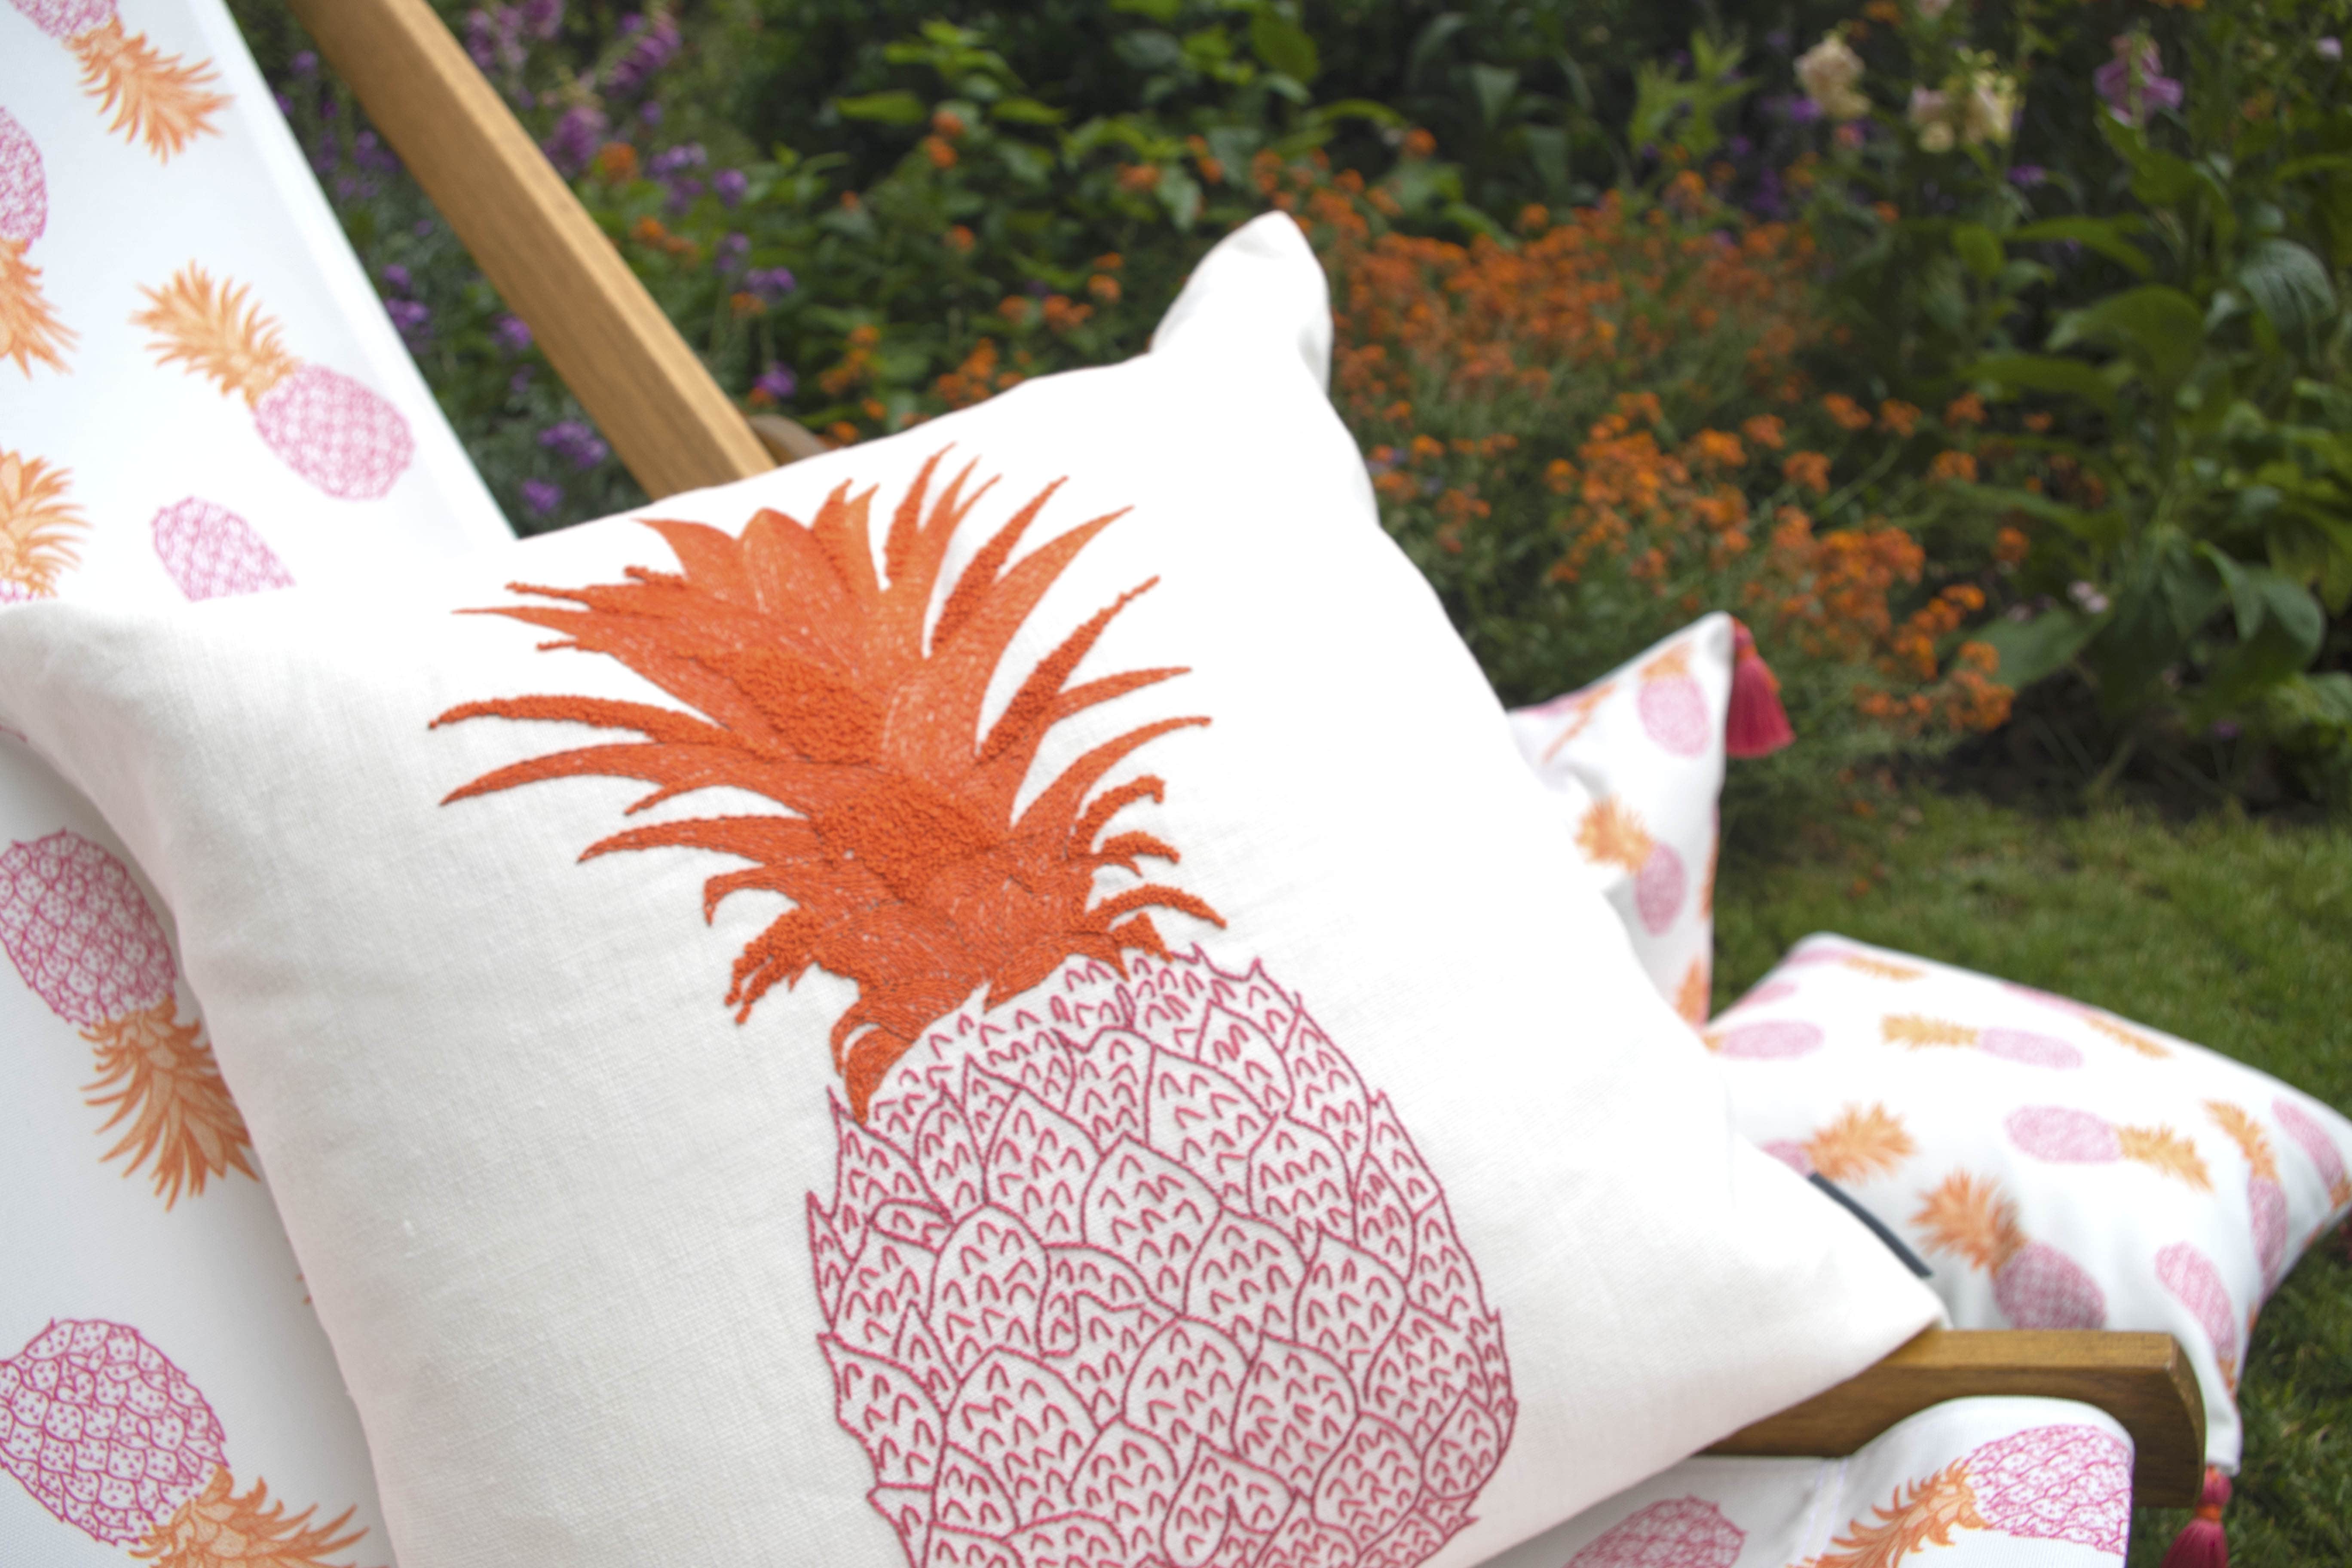 Fine Cell Work Melissa Wyndham Pineapple Collection Tropical Summer Wooden Garden Deckchair Pink Orange Fruit